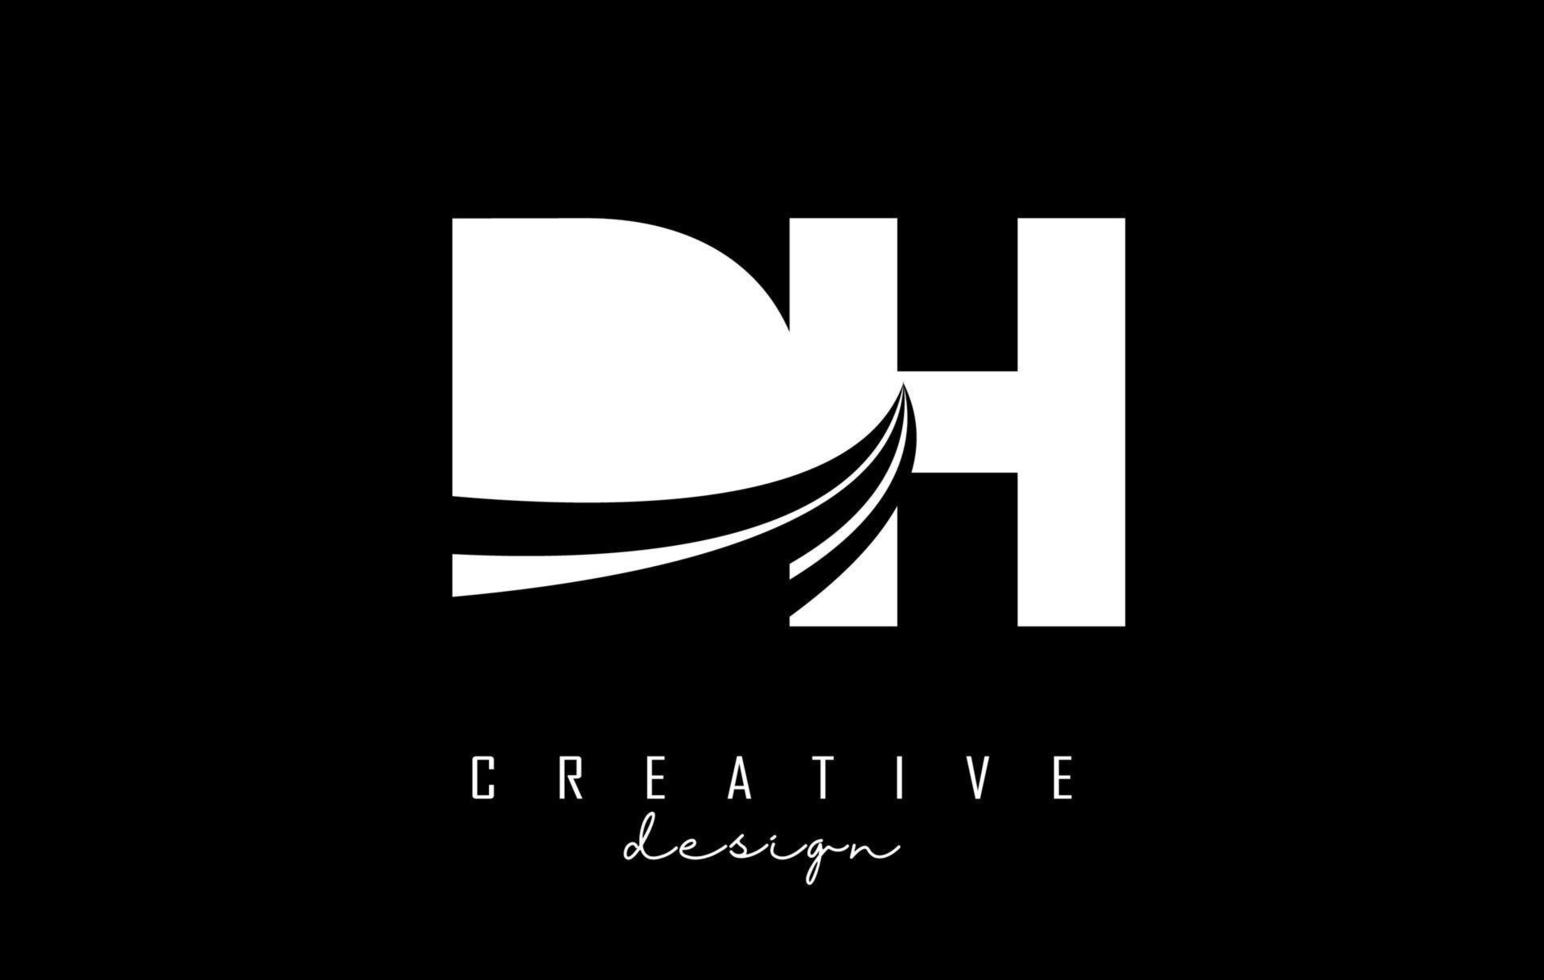 kreative weiße buchstaben dh dh logo mit führenden linien und straßenkonzeptdesign. Buchstaben mit geometrischem Design. vektor